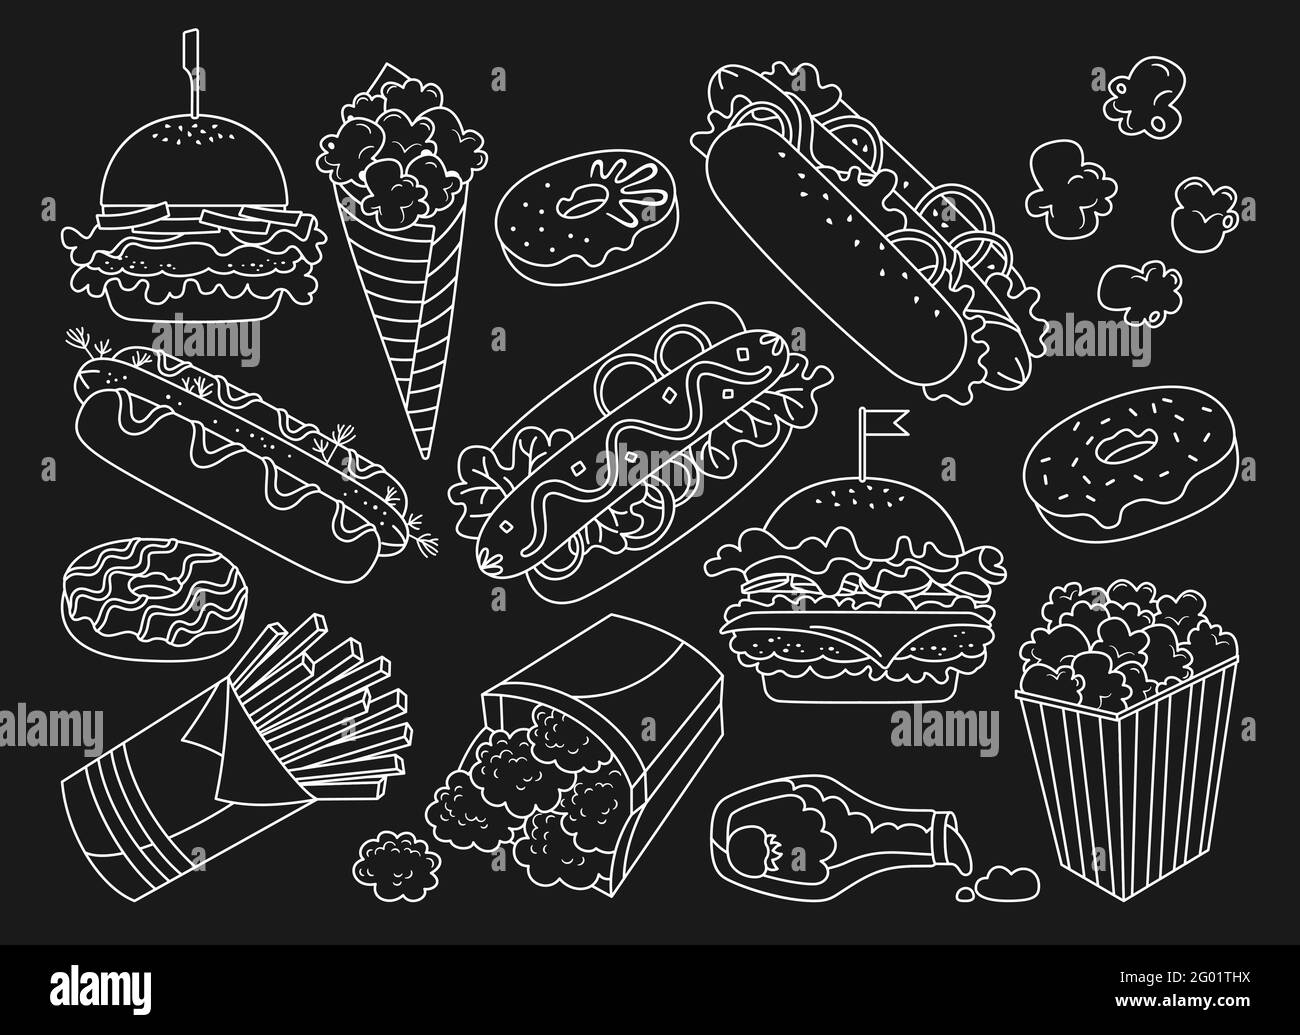 Handgezeichnetes Fast Food-Doodle-Set. Symbole zur Sammlung von Donut